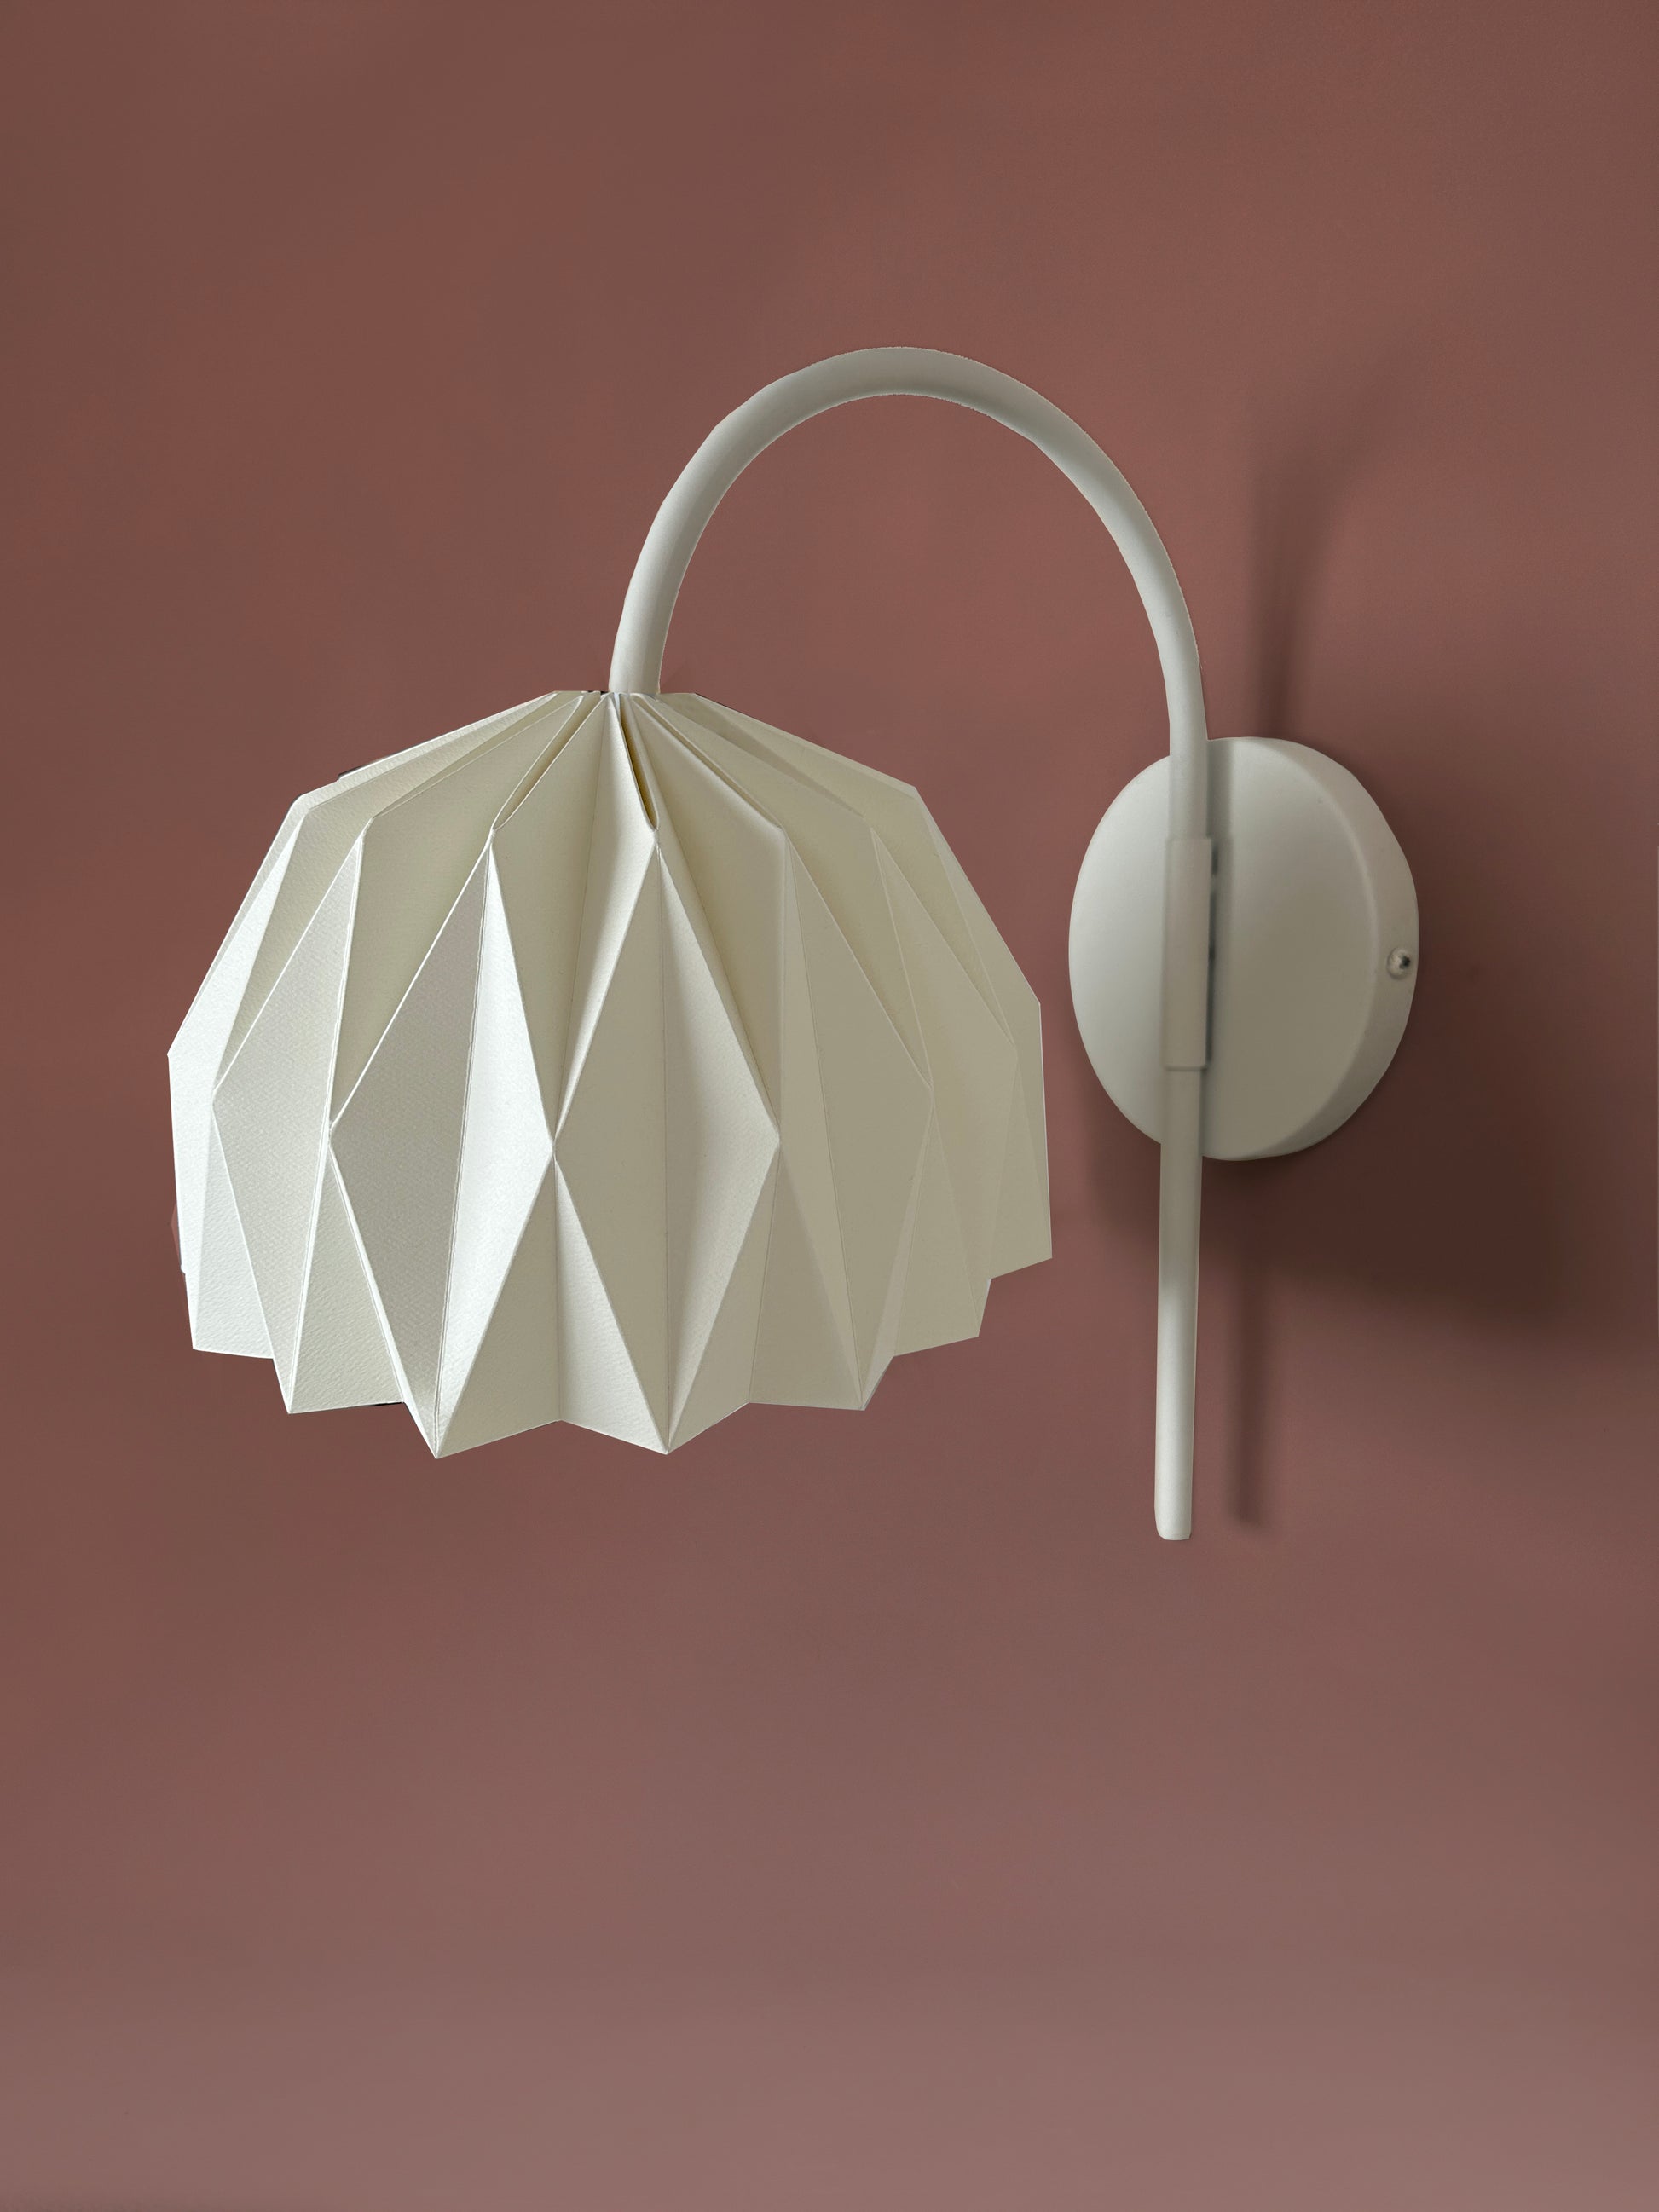 Plie Lights, lámparas hechas en Colombia a mano, por artesanos colombianos. La caperuza es de papel doblado a mano con un diseño geometrico. Soporte metálico color blanco. Perfectas para iluminar habitaciones y mesas de noche. Referencia Fenix. 